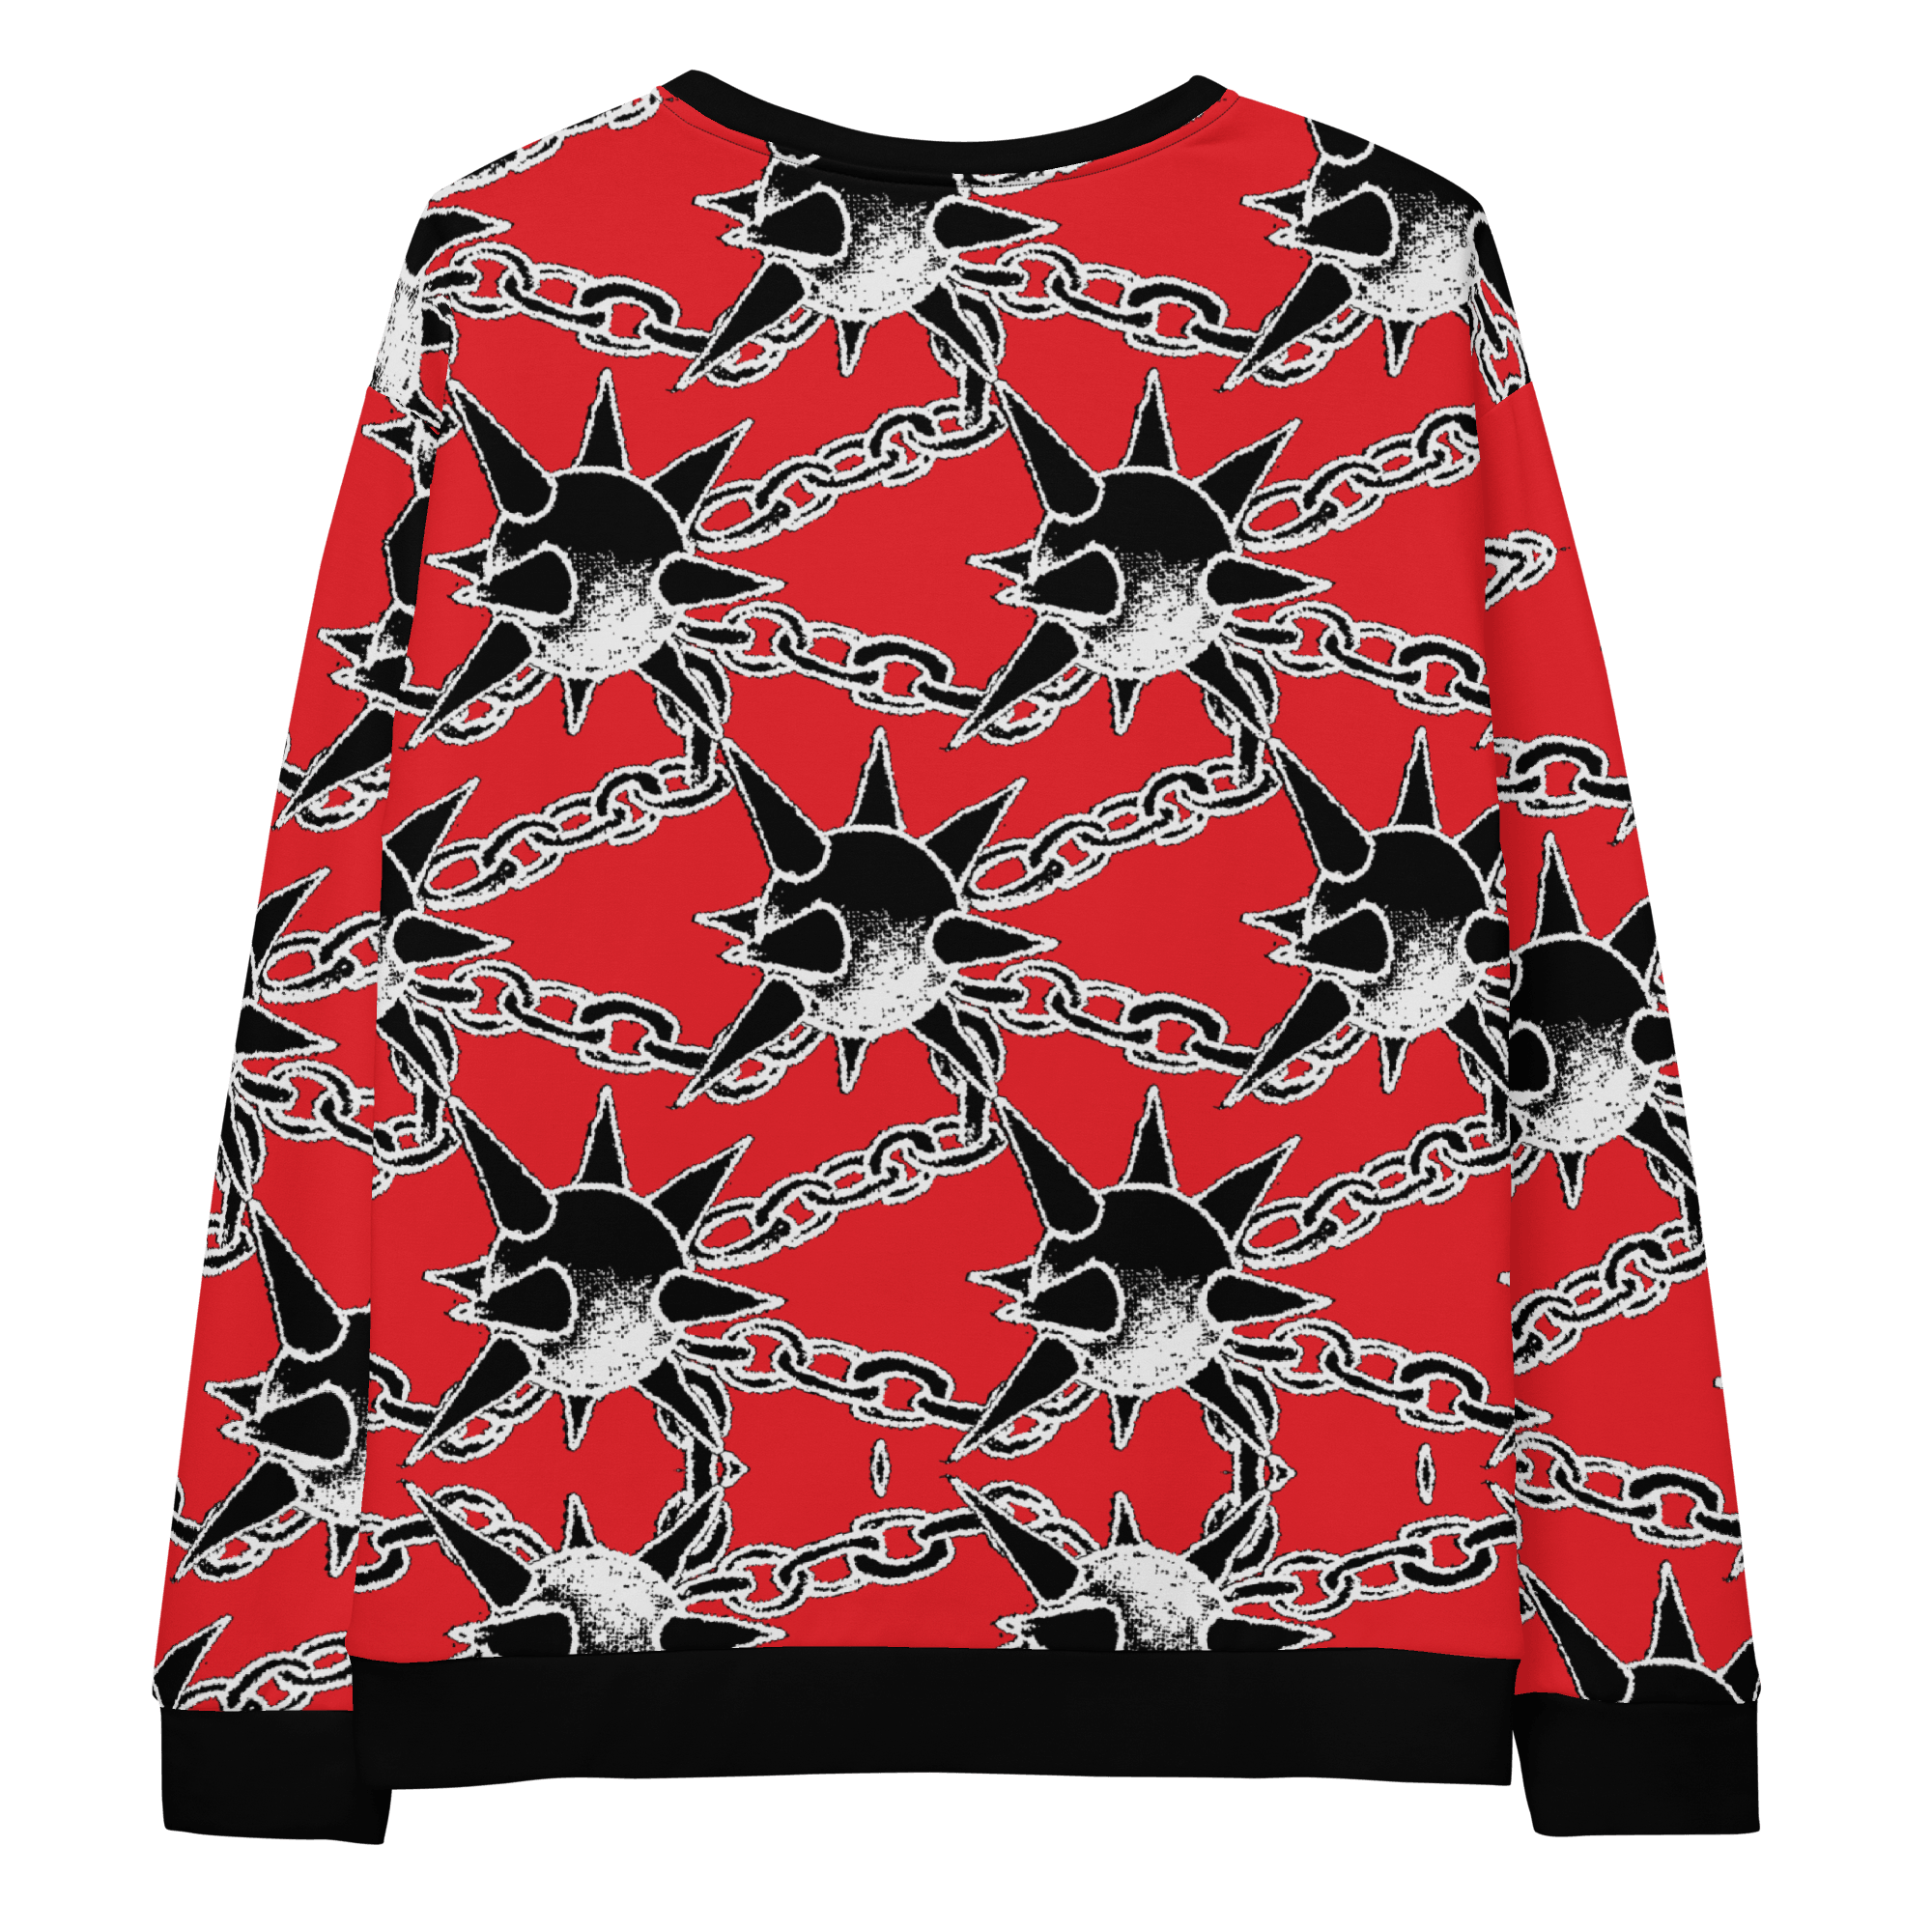 WEAKEN Heat® Deluxe Sweatshirt (only 10 for sale) - Kikillo Club